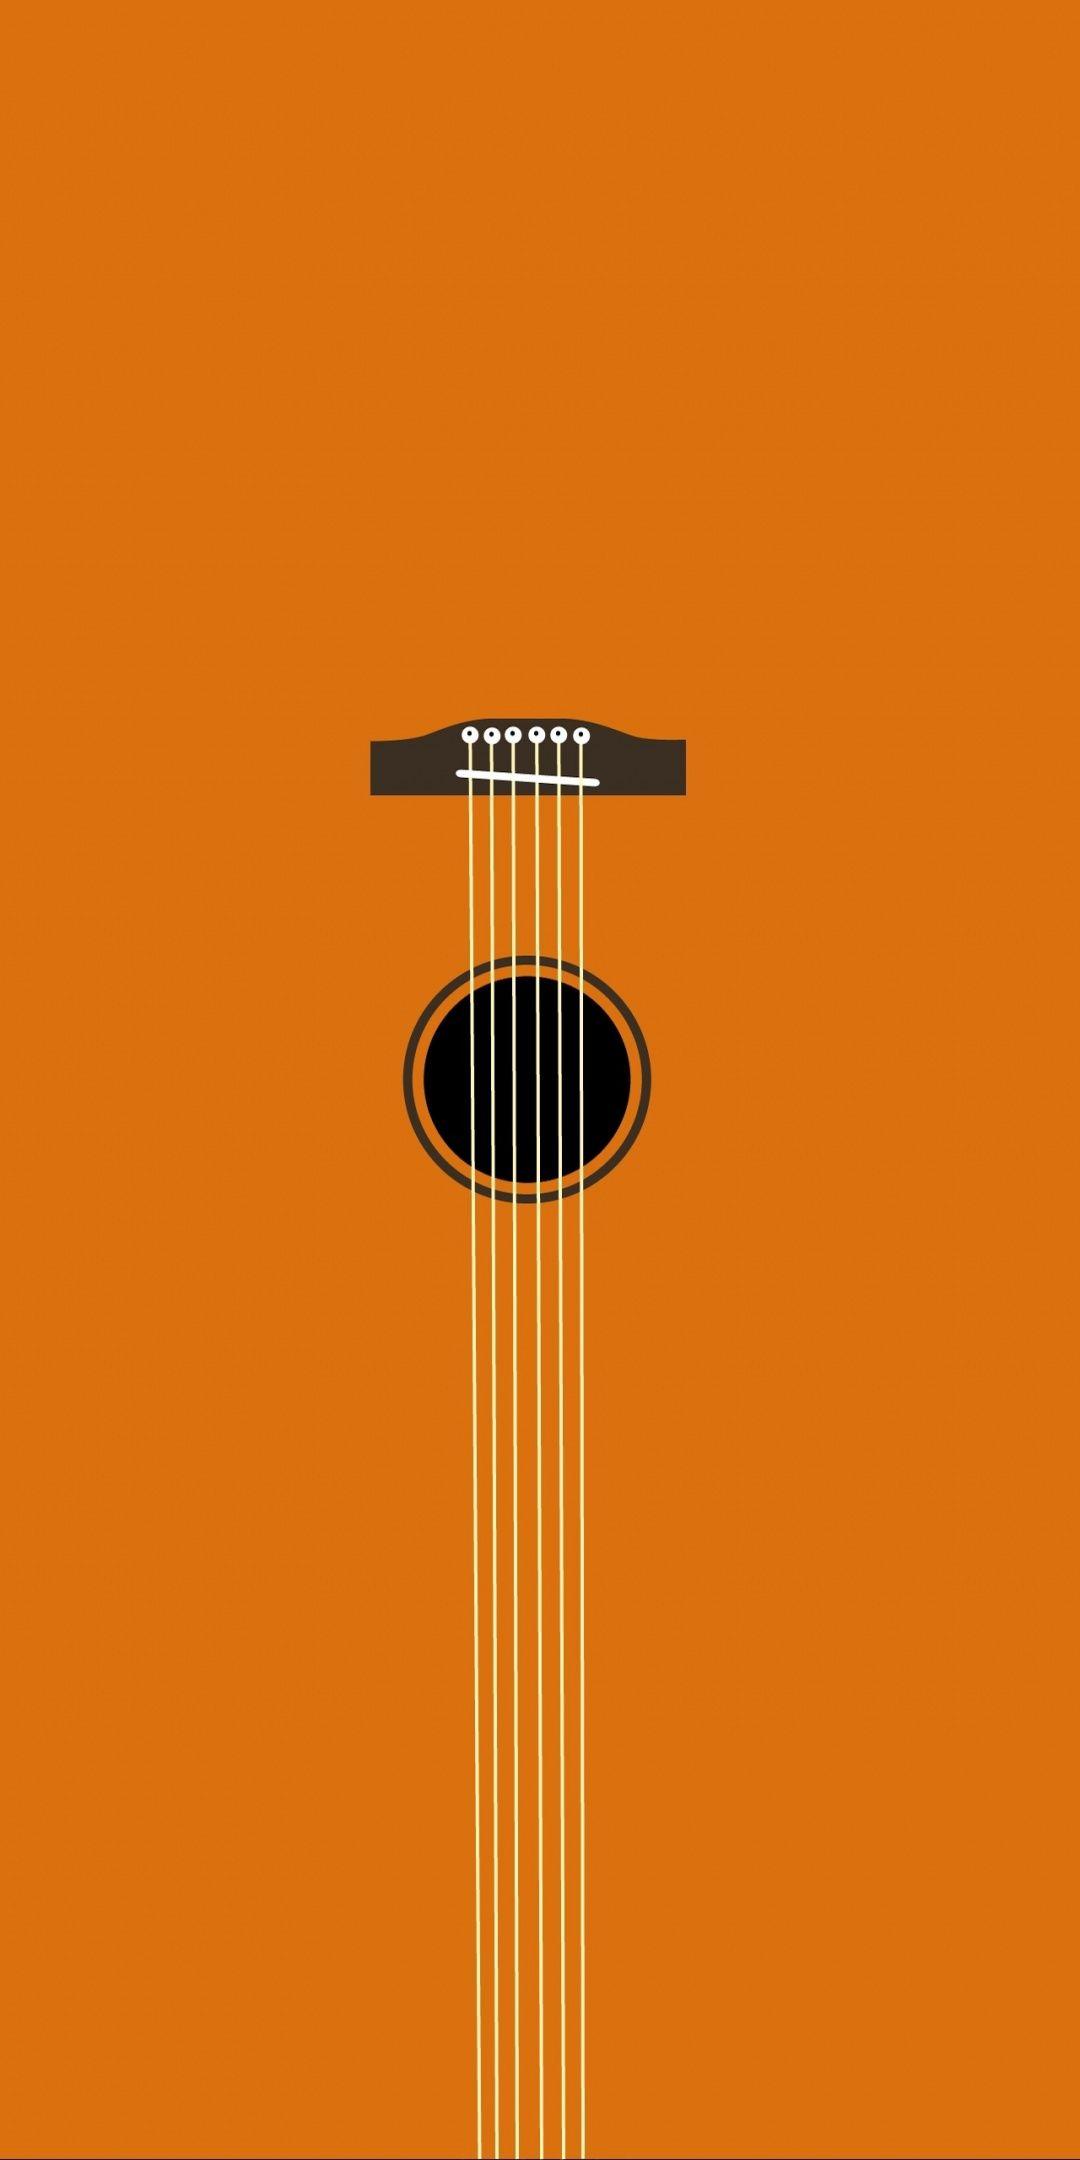 Minimal, music, guitar, art, 1080x2160 wallpaper in 2019